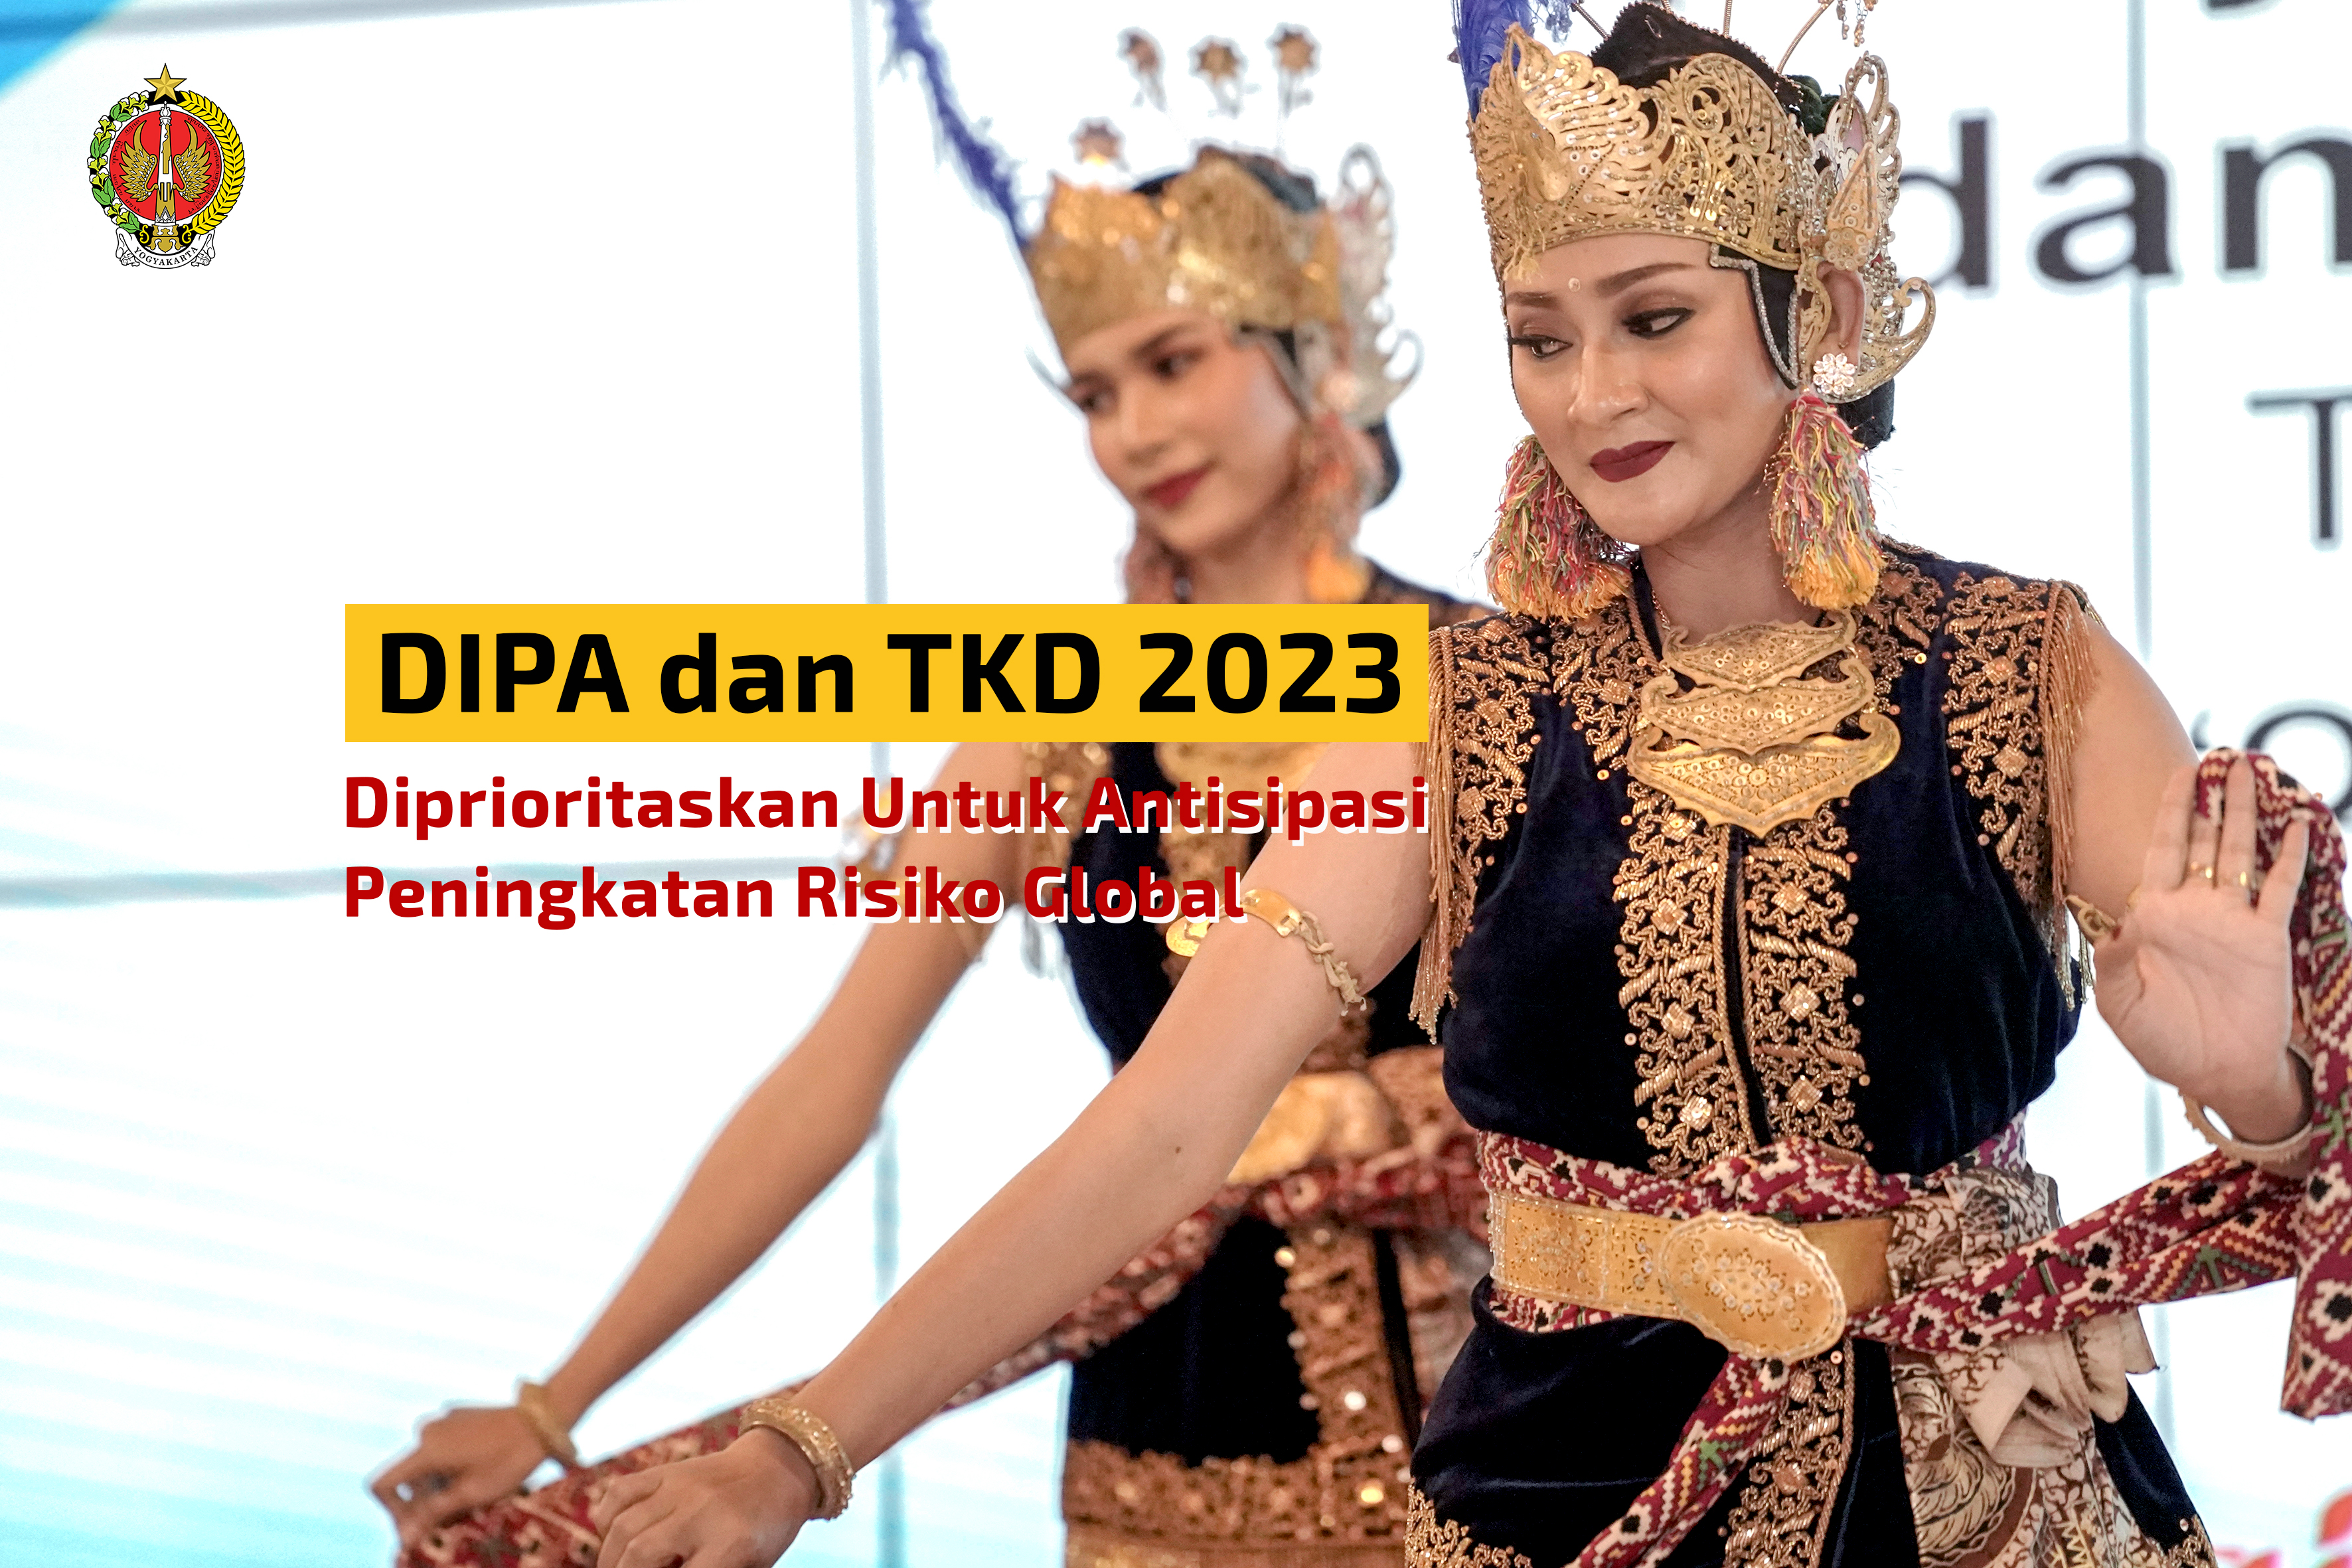 DIPA dan TKD 2023 Diprioritaskan Untuk Antisipasi Peningkatan Risiko Global